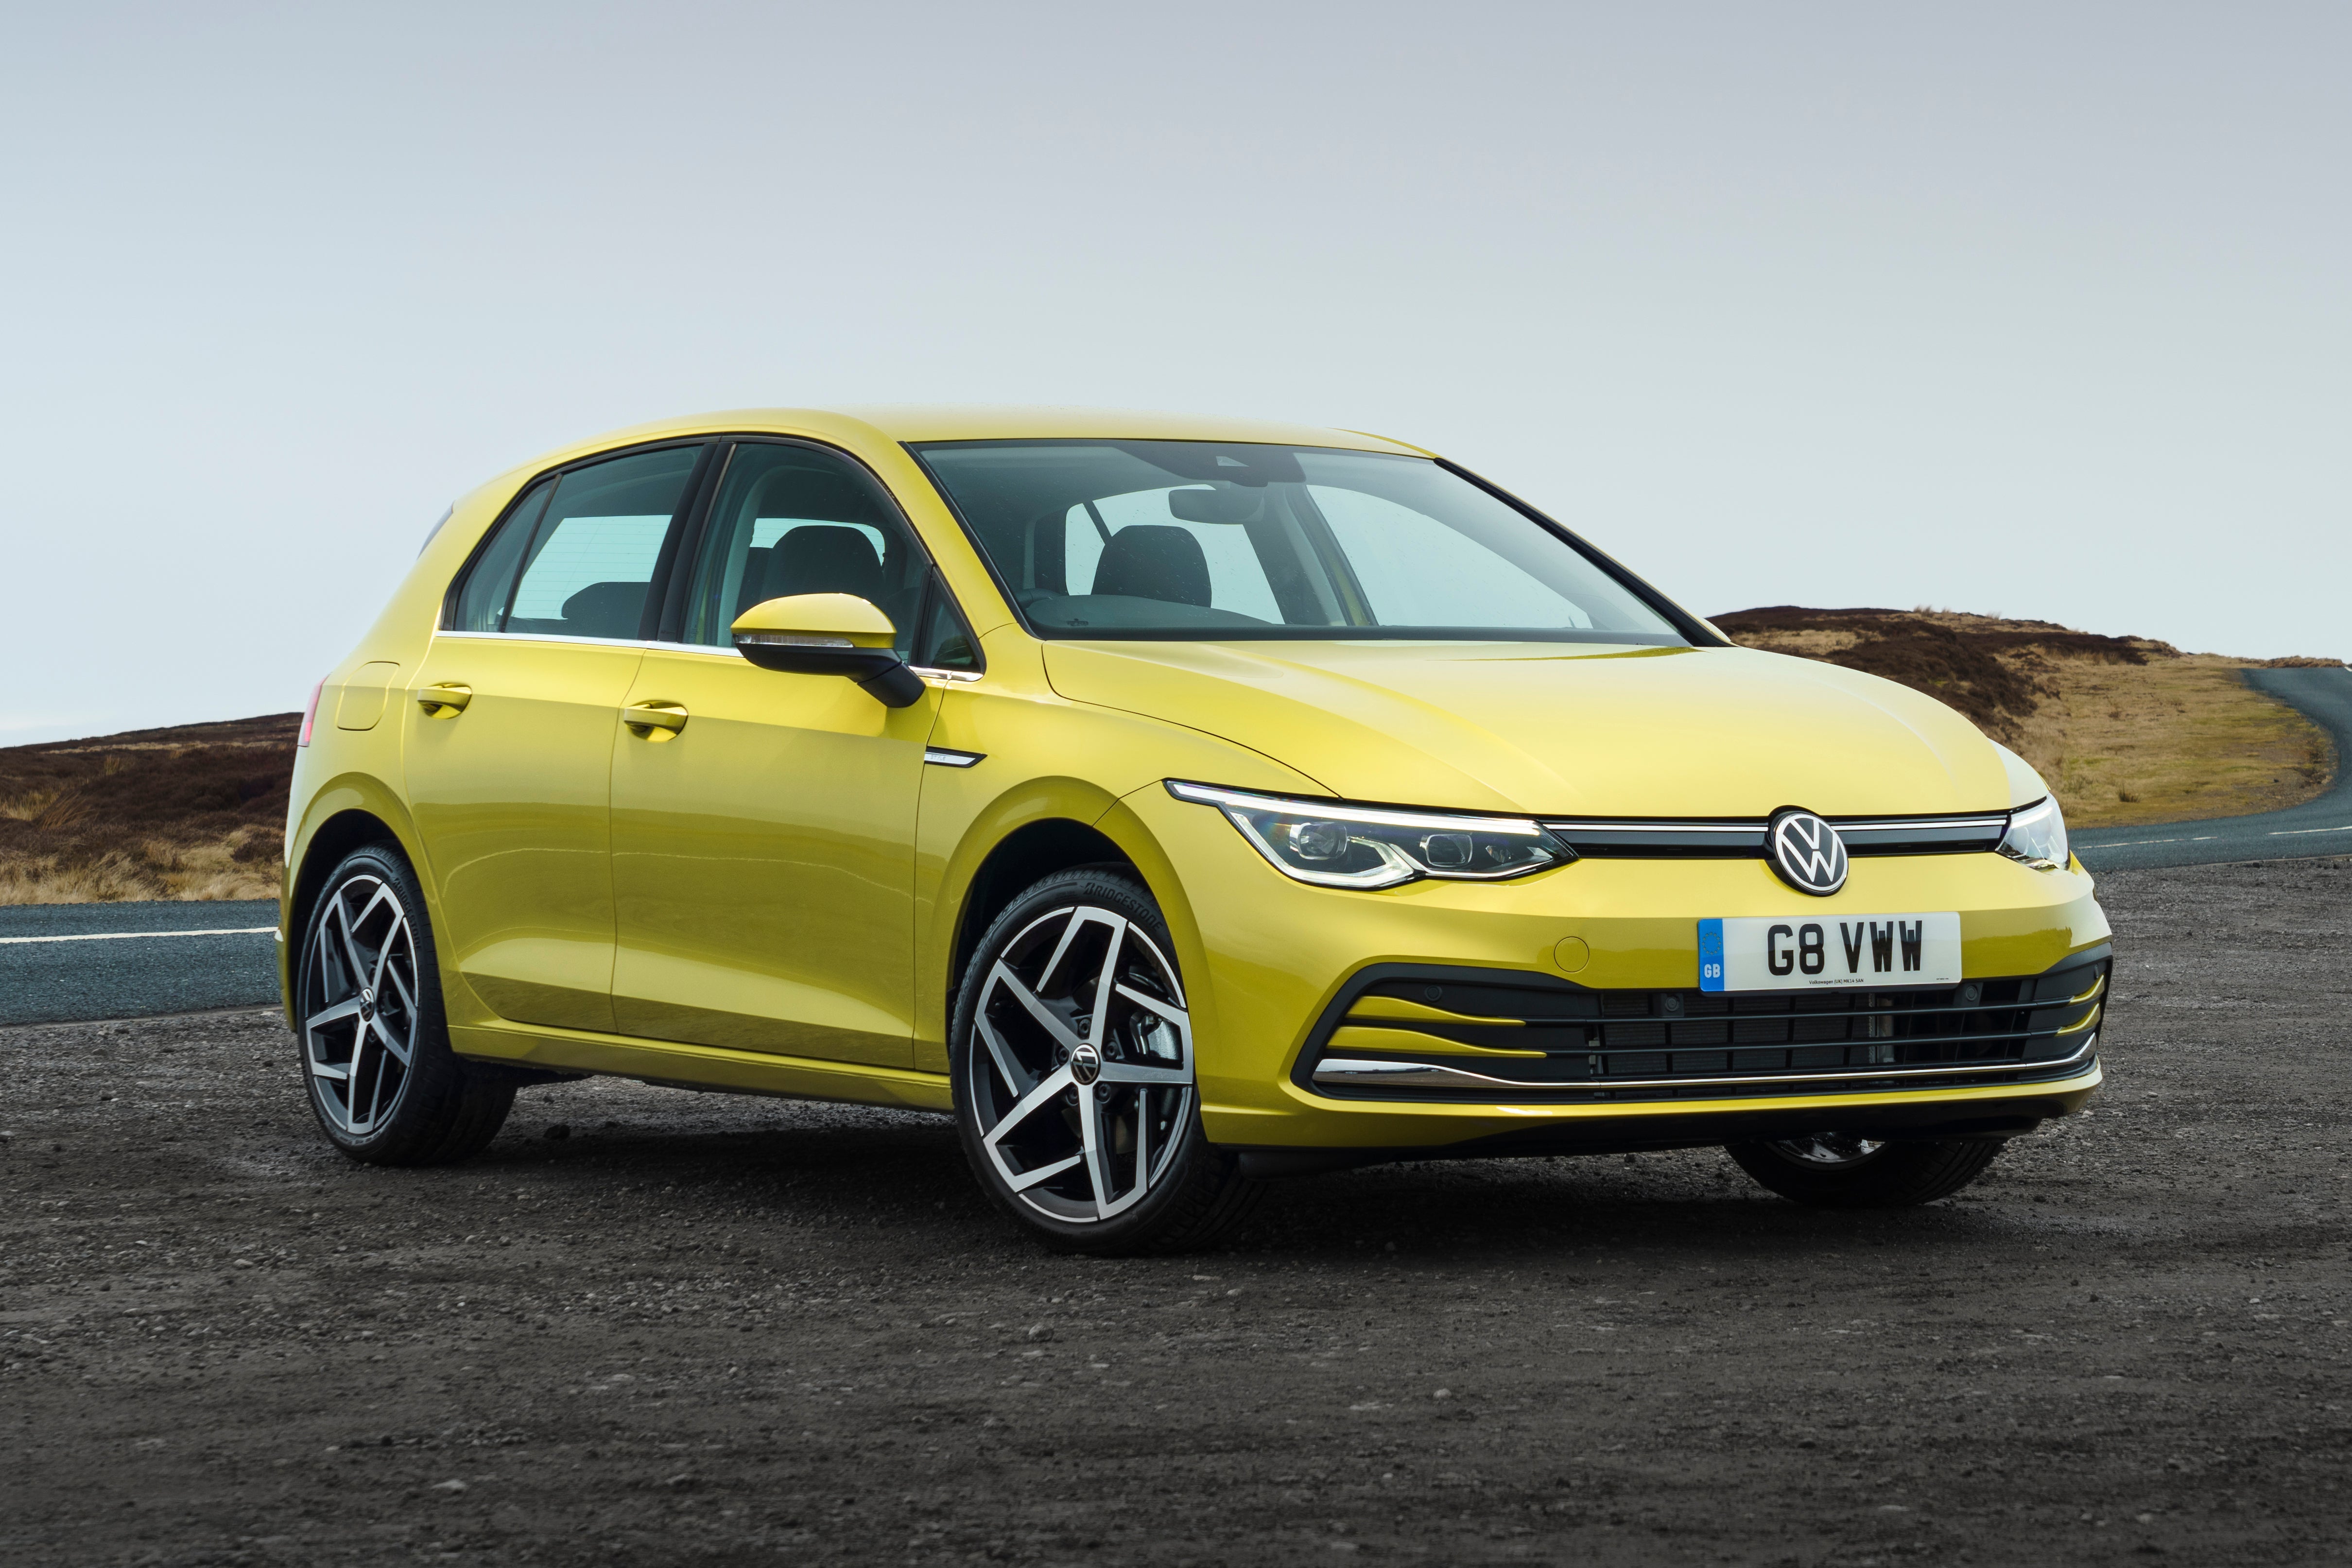 Volkswagen Golf 2020 Yellow